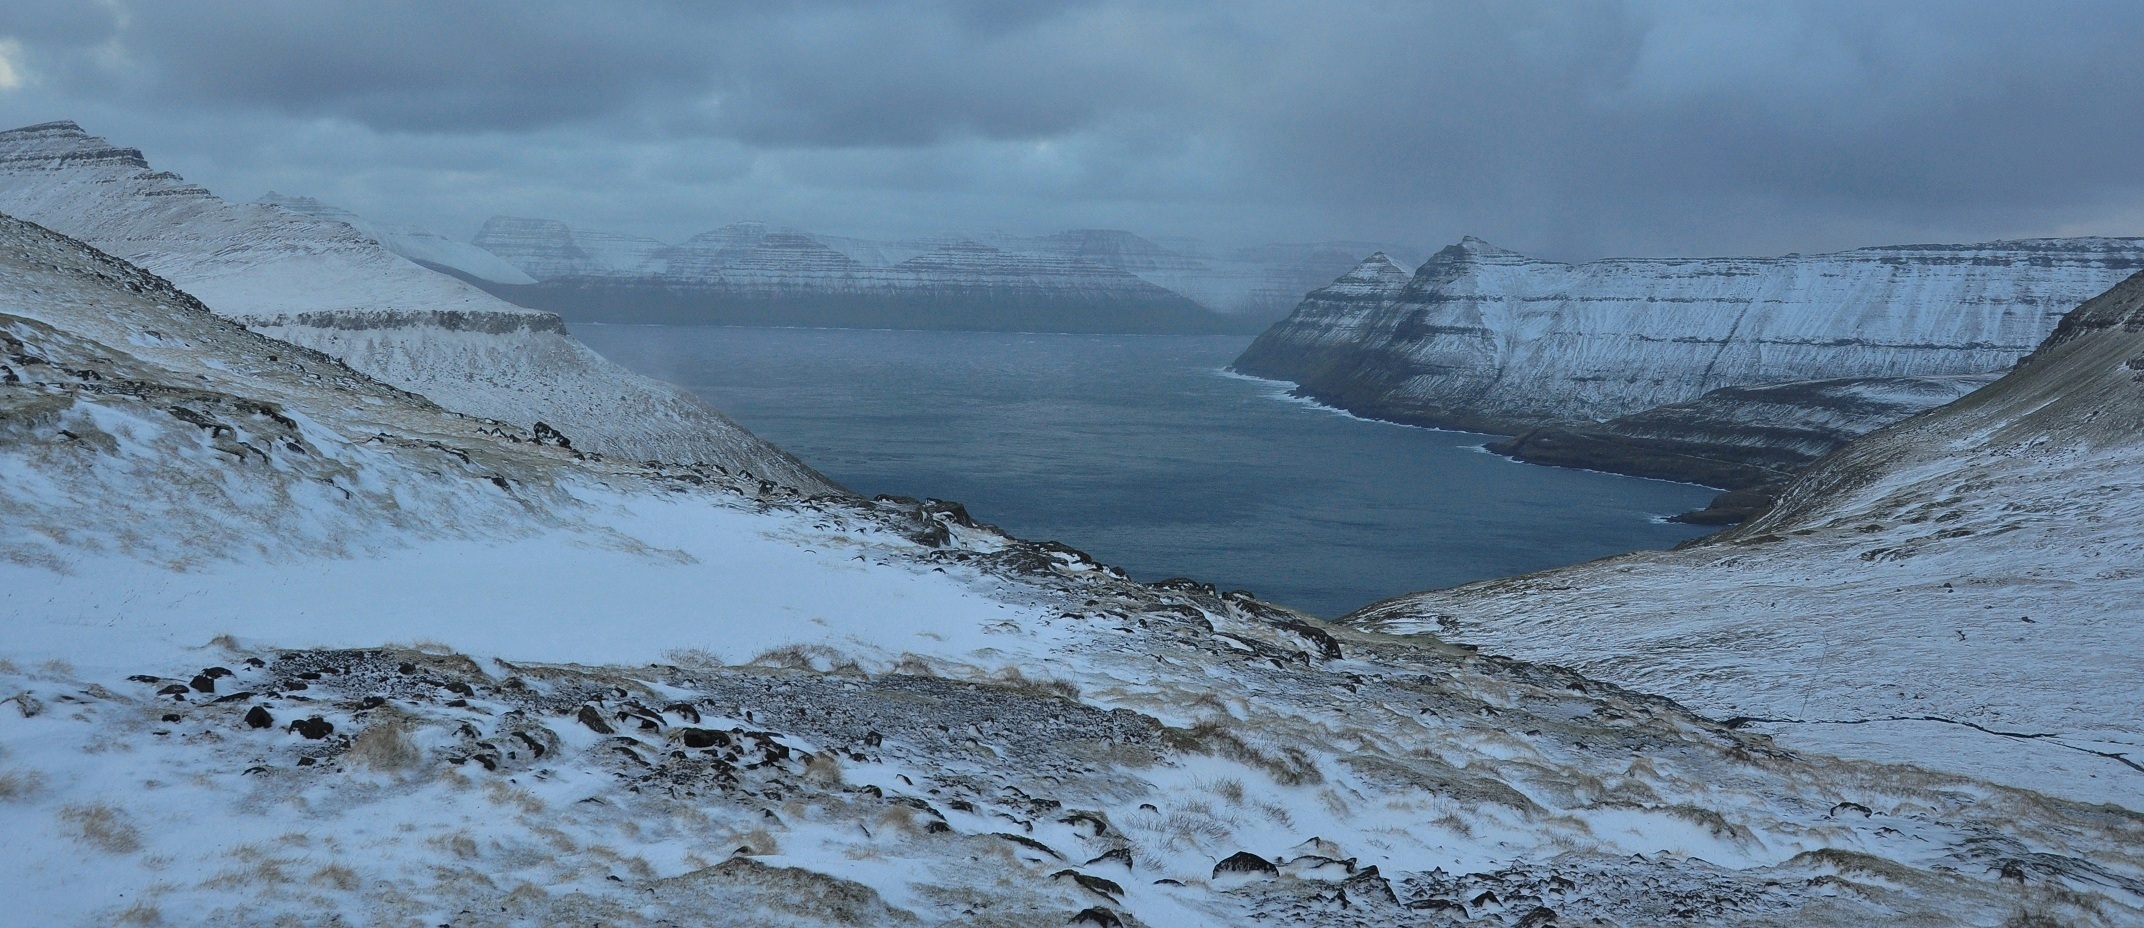 Faroe Islands, Eysturoy, Funningsfjørður (fjord) in October